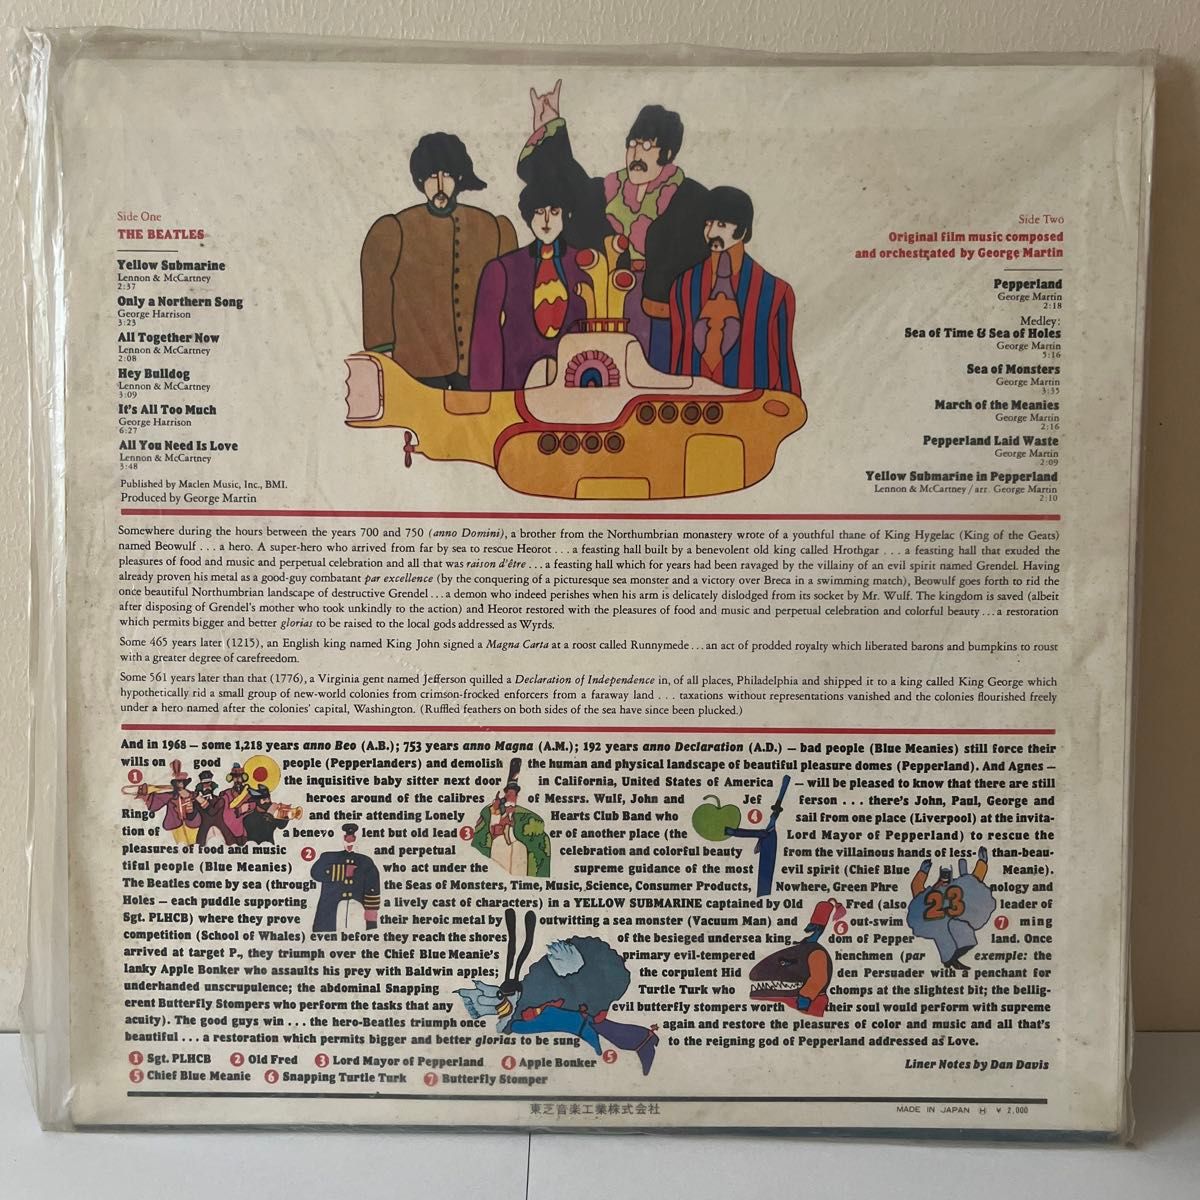 THE BEATLES' Yellow Submarine ビートルズレコード赤盤　AP-8610 Apple RECORDS美品